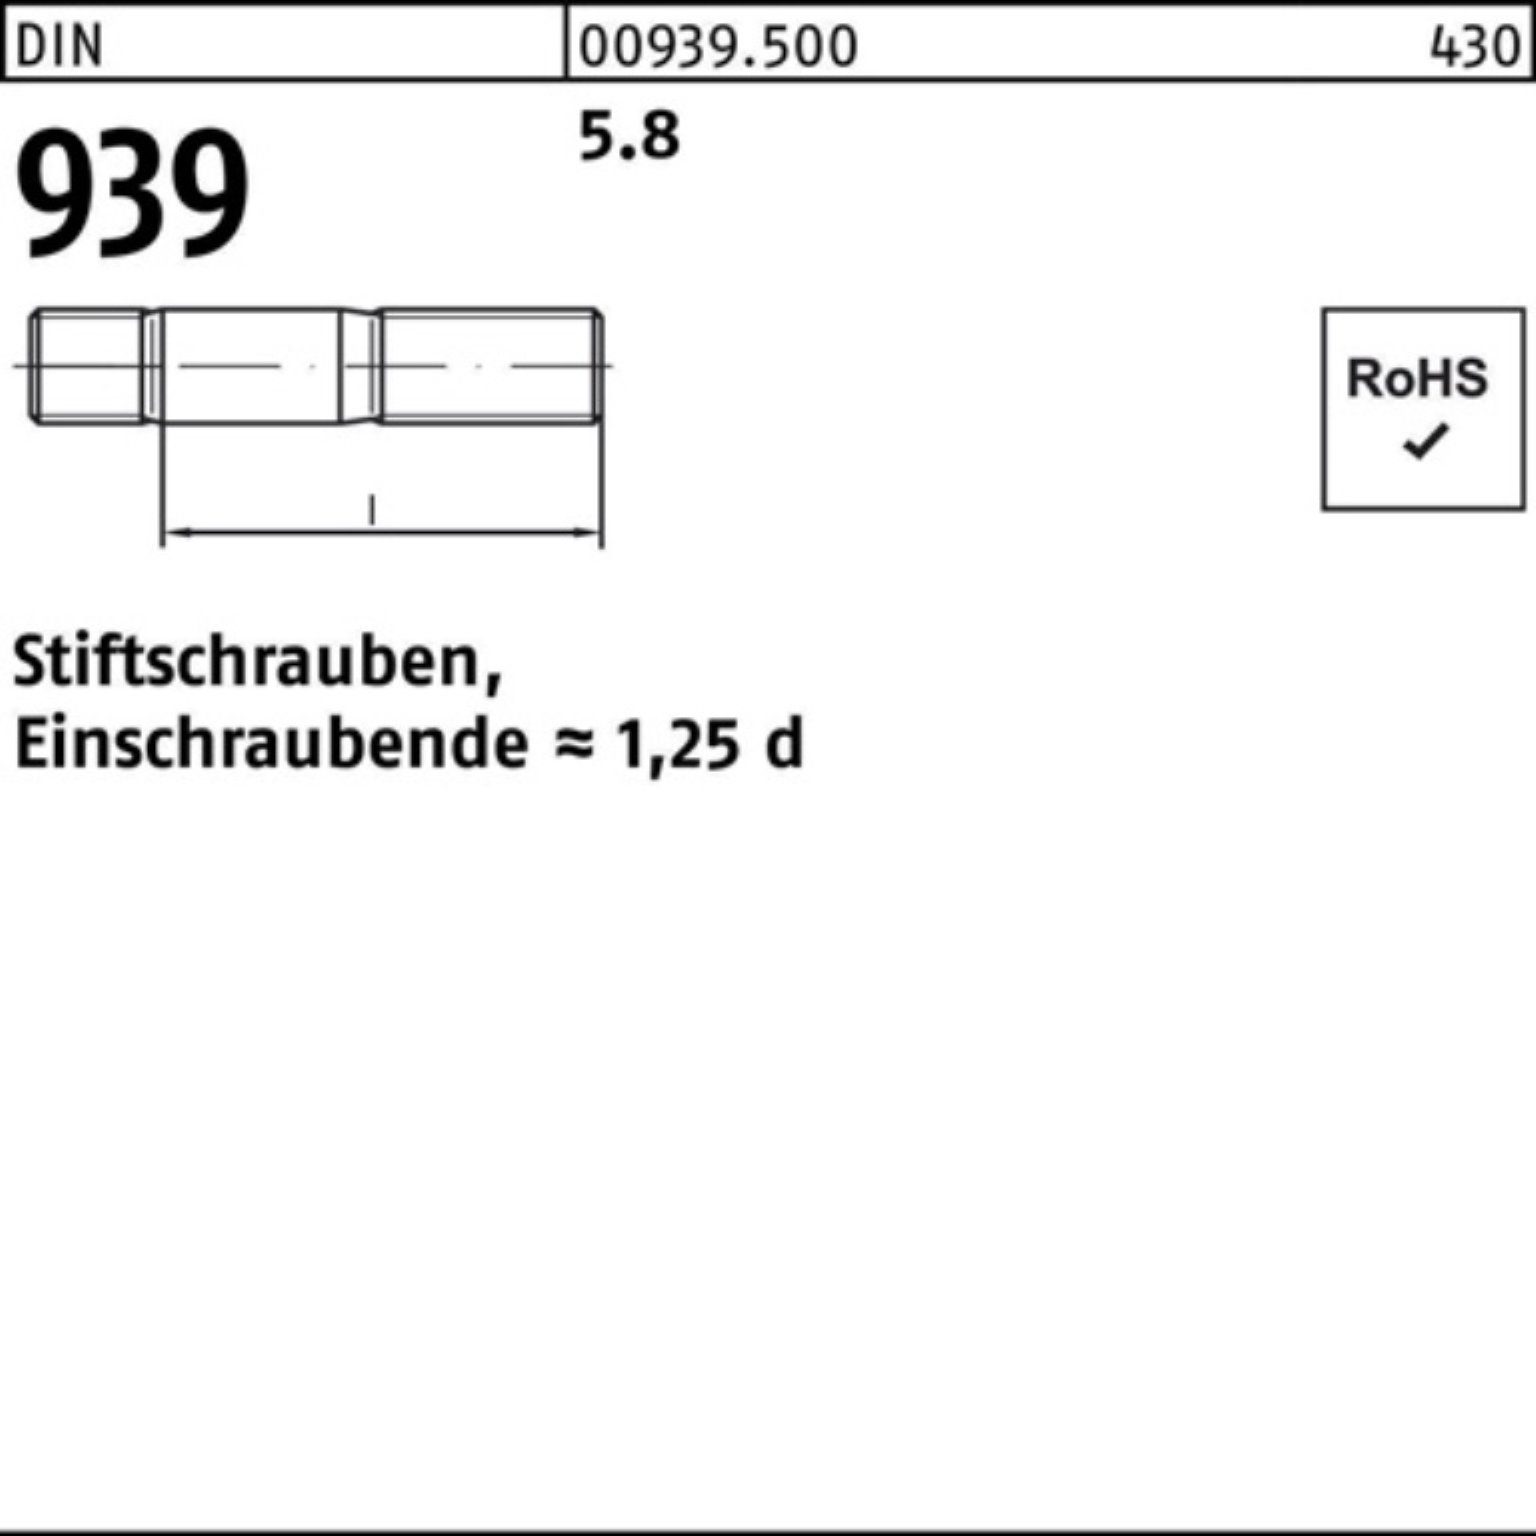 Reyher Stiftschraube Pack 10 M24x Einschraubende=1,25d 100er DIN S 65 5.8 Stiftschraube 939